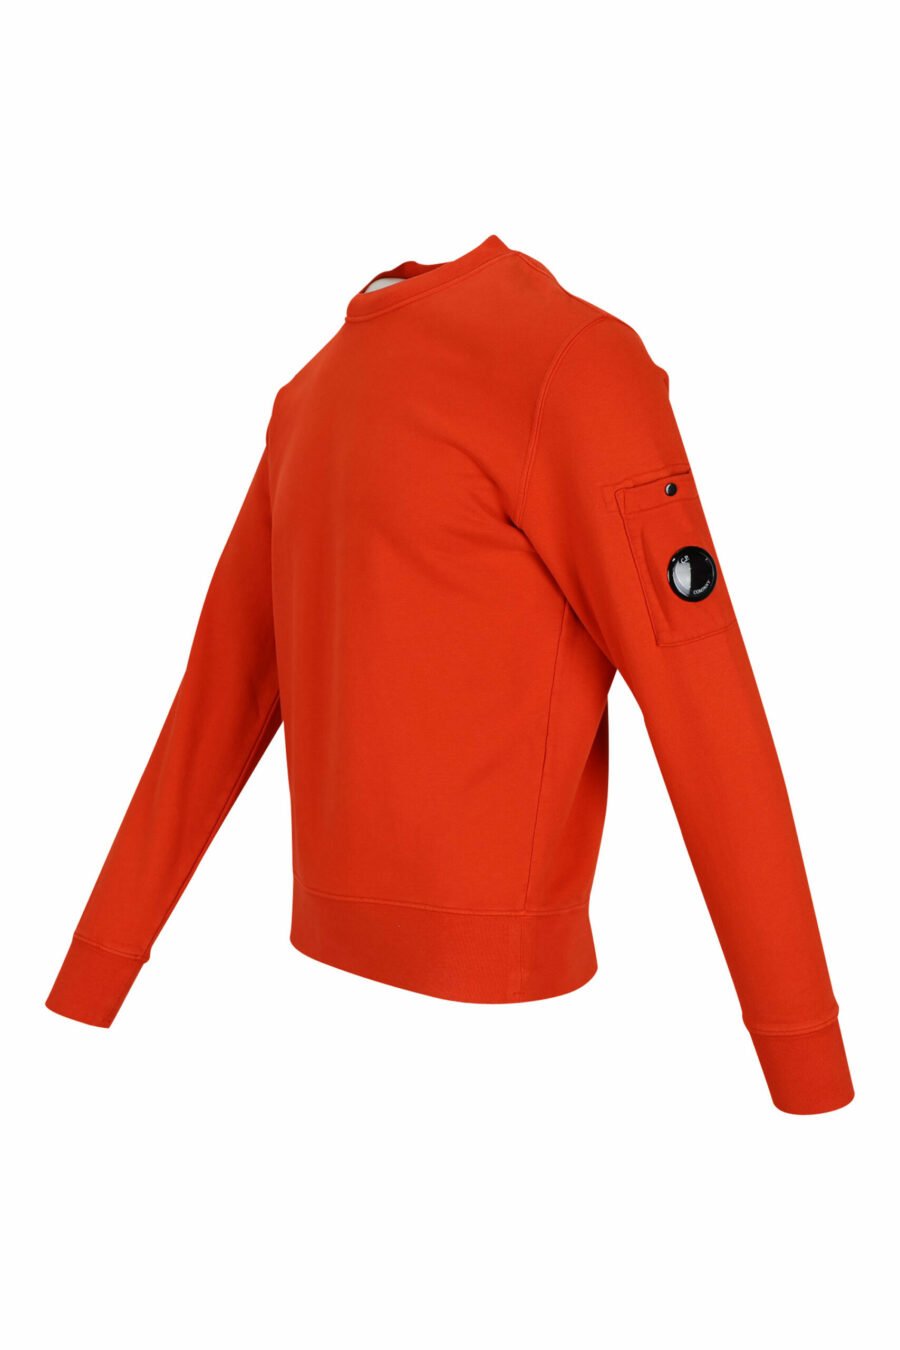 Orange sweatshirt with side lens logo - 7620943598254 1 scaled